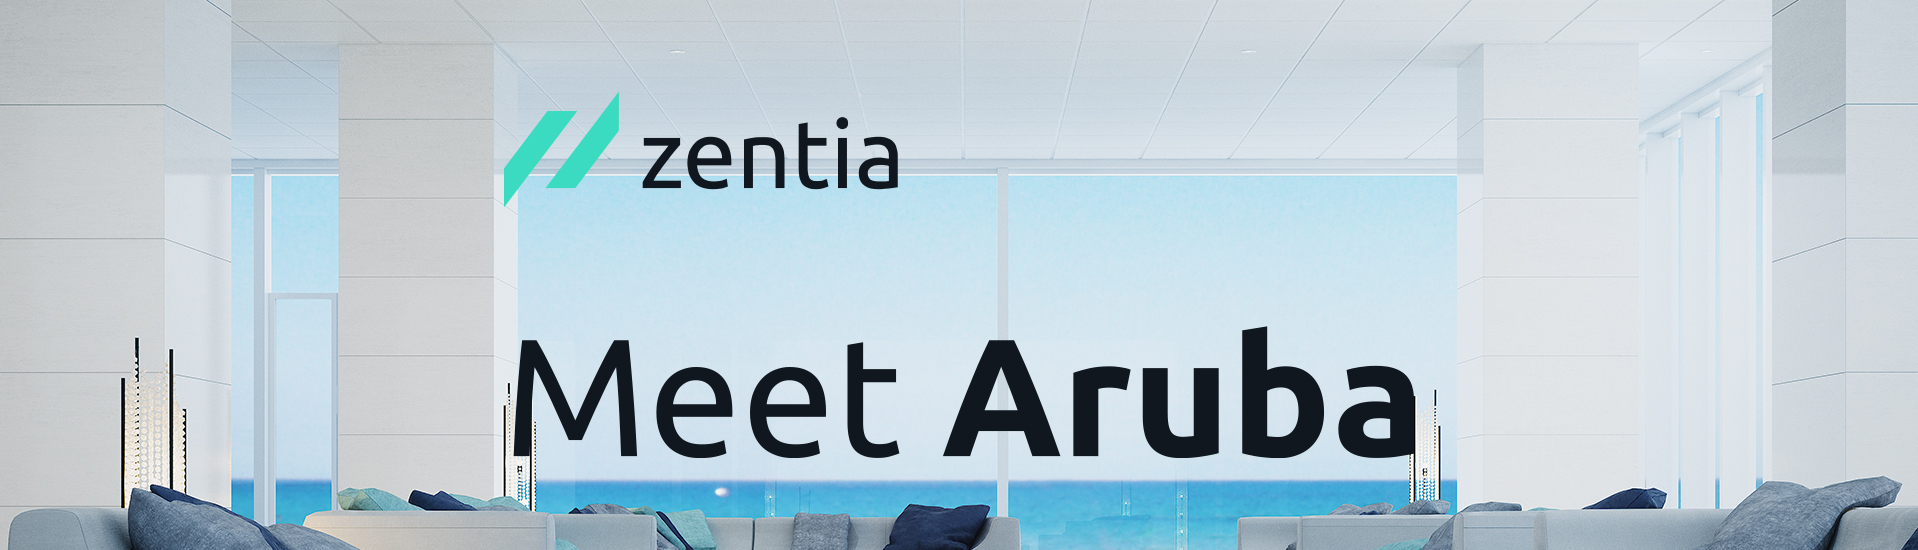 Zentia - Aruba Banner - 1918 x 550